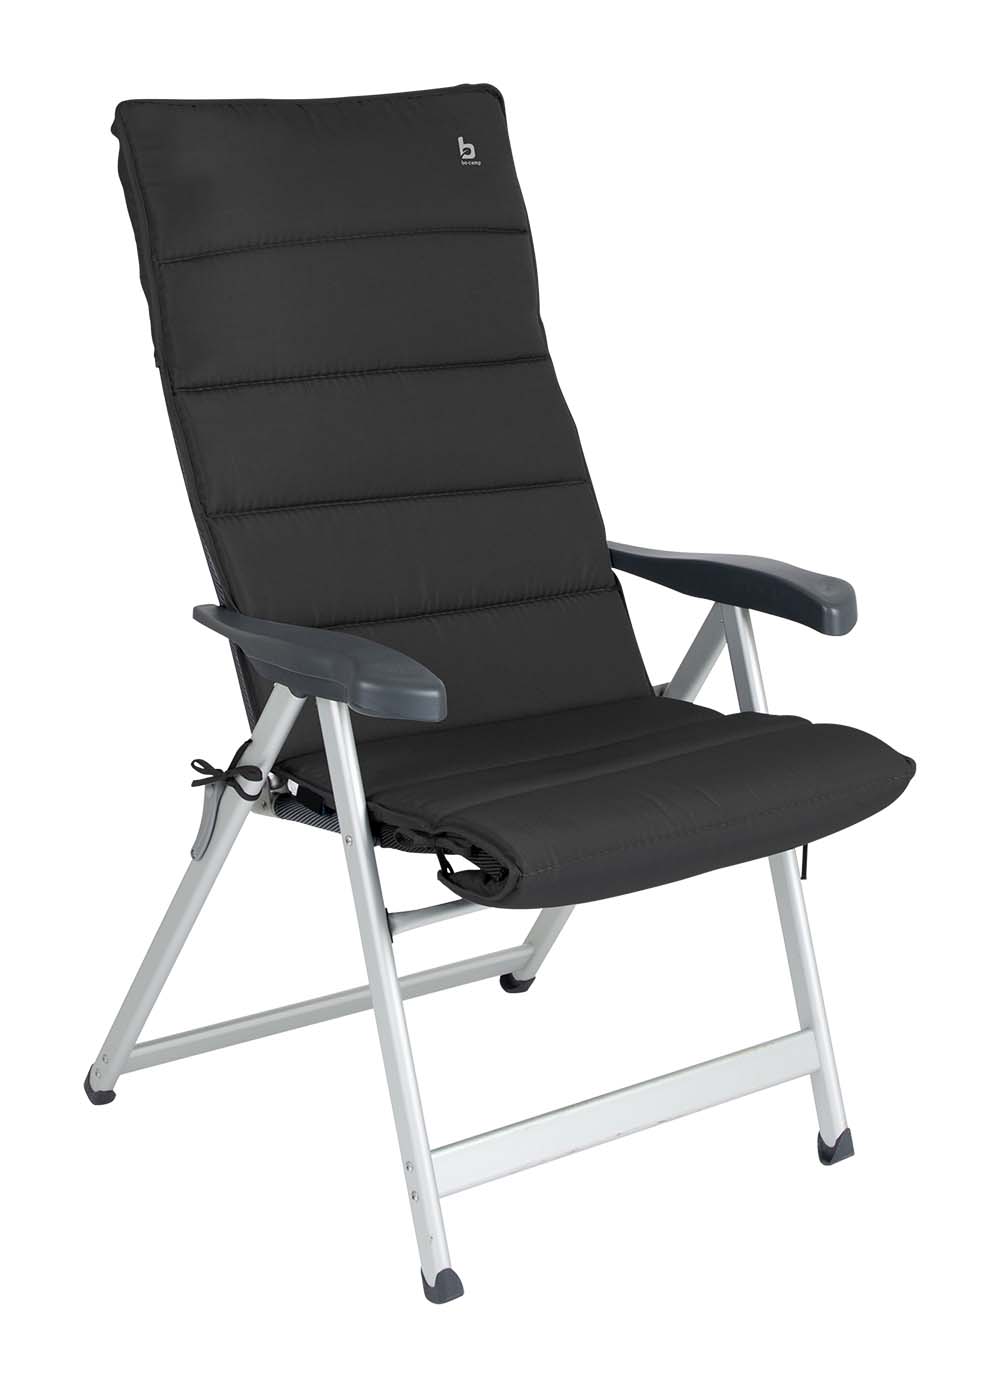 1849319 Een universele stoelhoes voor (kampeer)stoelen. Deze gepolsterde stoelhoes zorgt voor optimaal zitcomfort. Door middel van koord en lusjes is deze hoes passend te maken op iedere stoel.